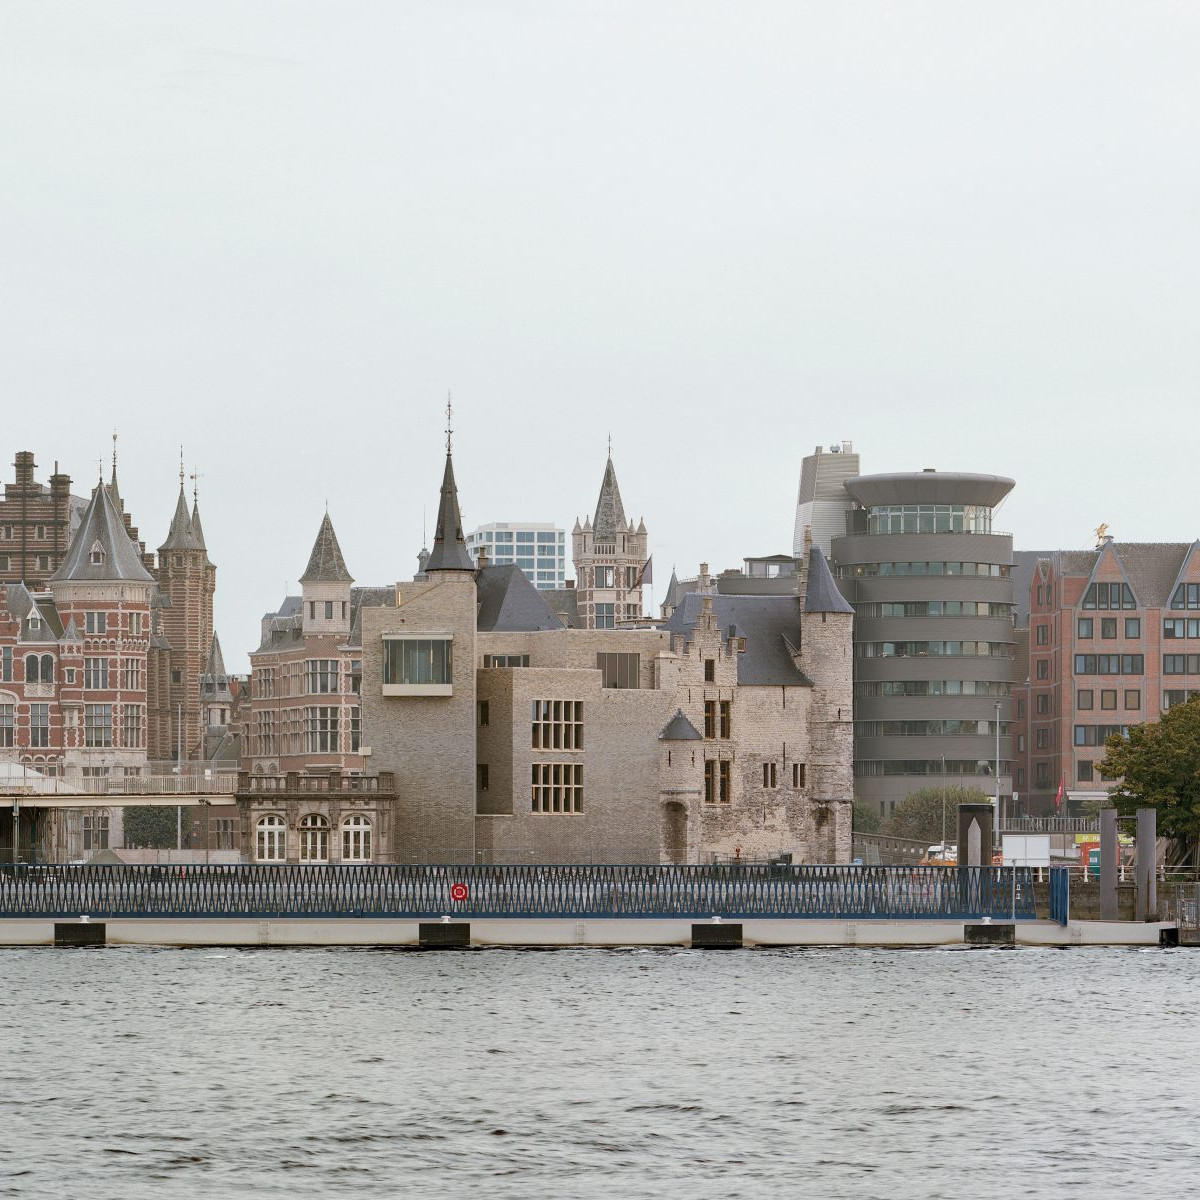 noAarchitecten: Het Steen, Antwerpen - Sanierung und Erweiterung 2021, heute: Besucherzentrum, Kreuzfahrt­terminal und Aussichtspunkt - Foto Kim Zwarts